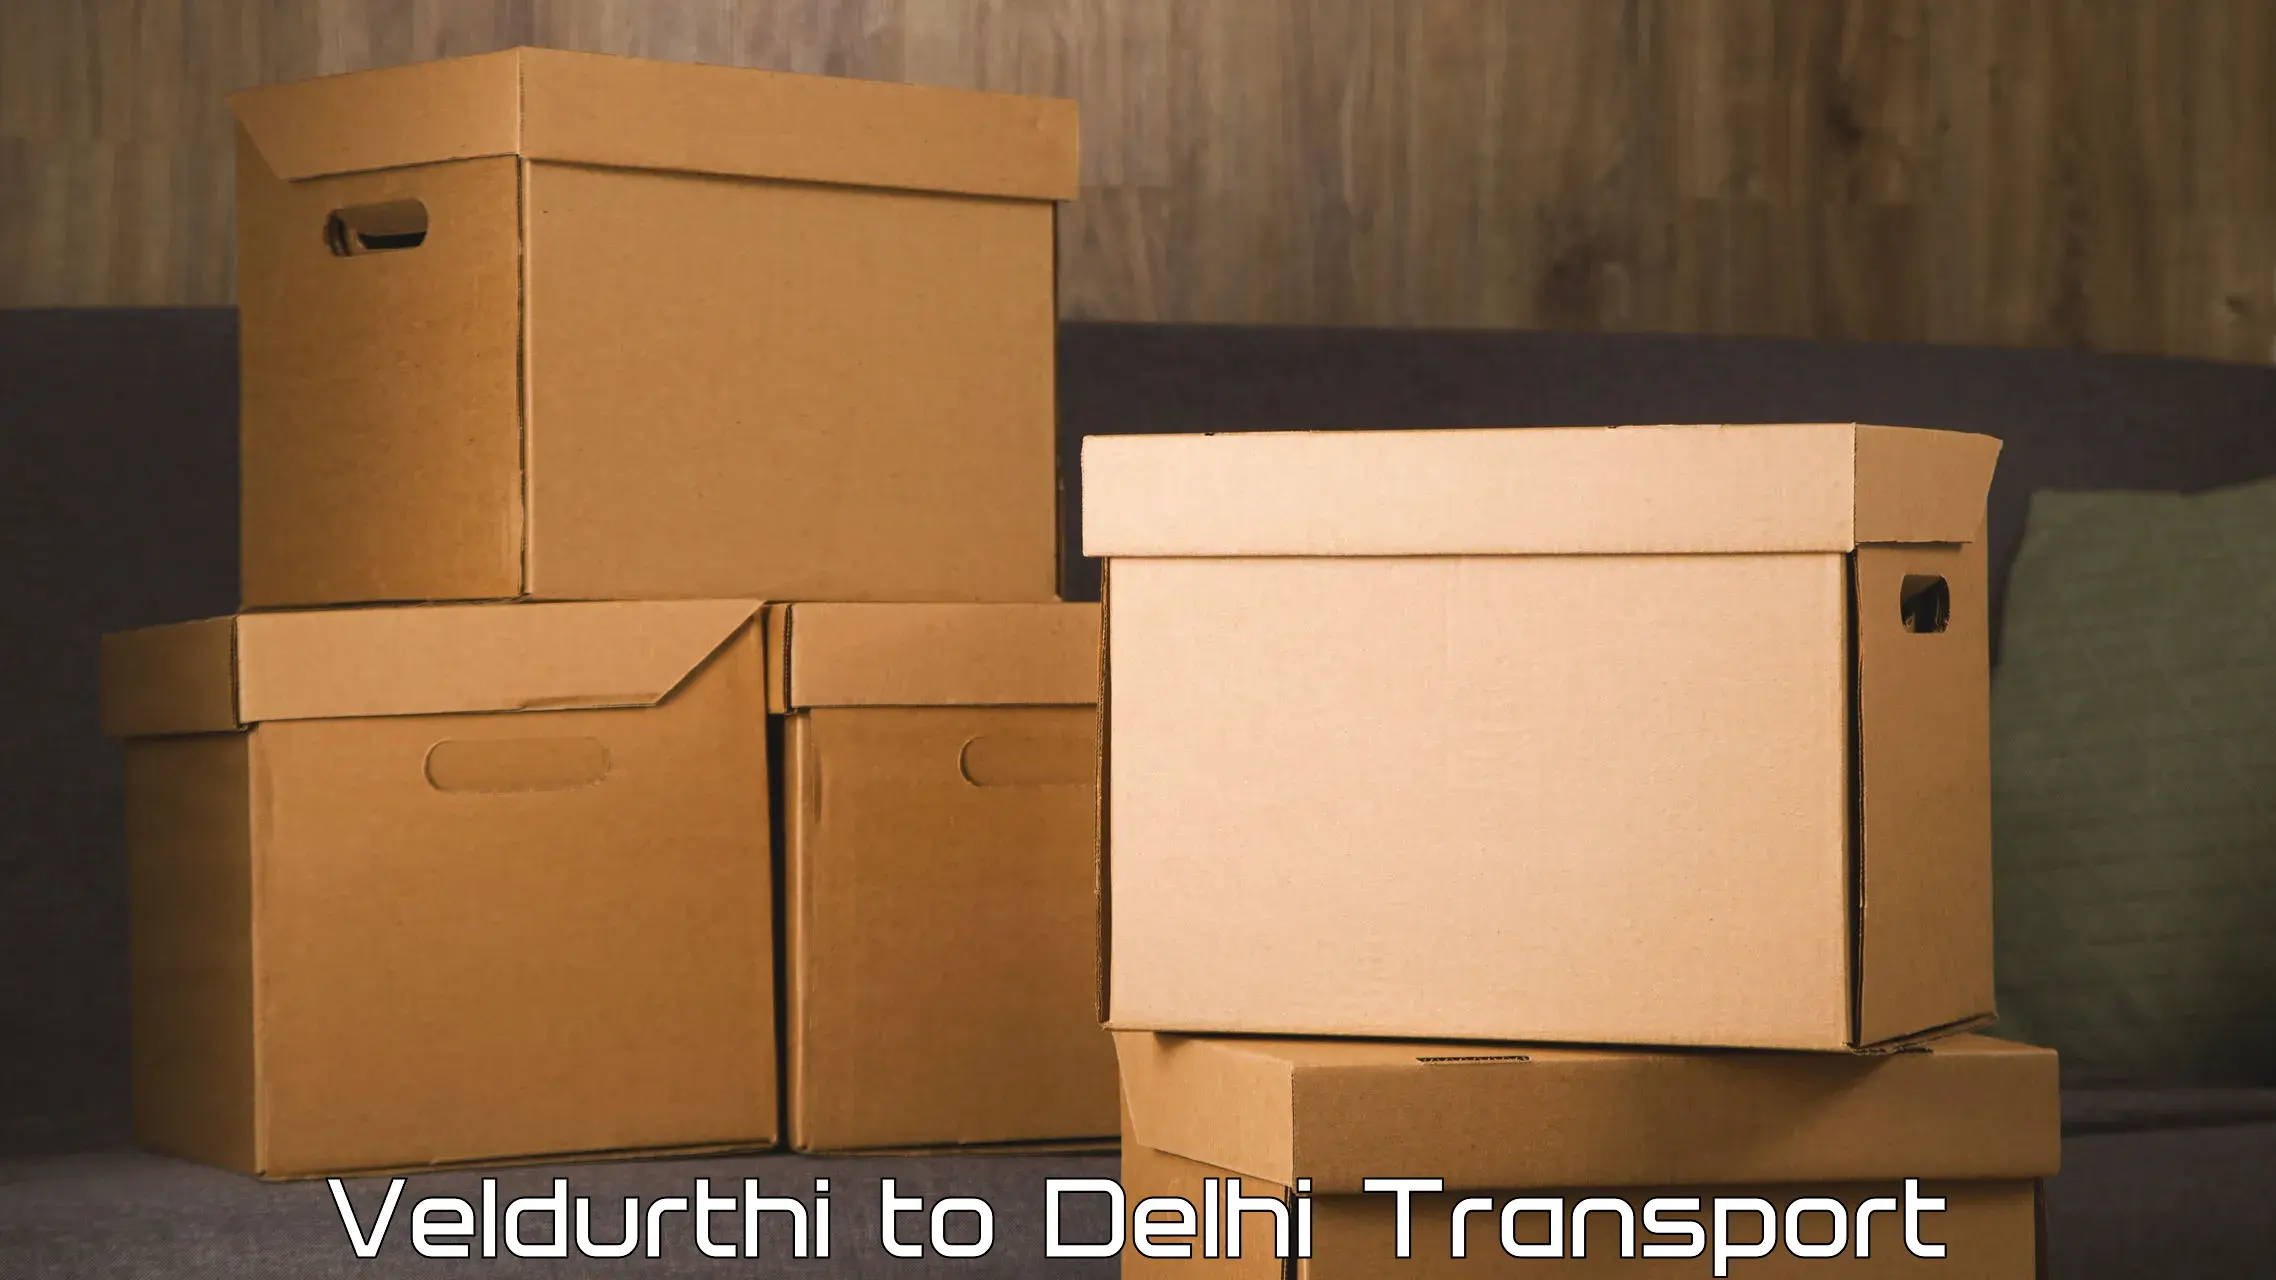 Nationwide transport services Veldurthi to University of Delhi